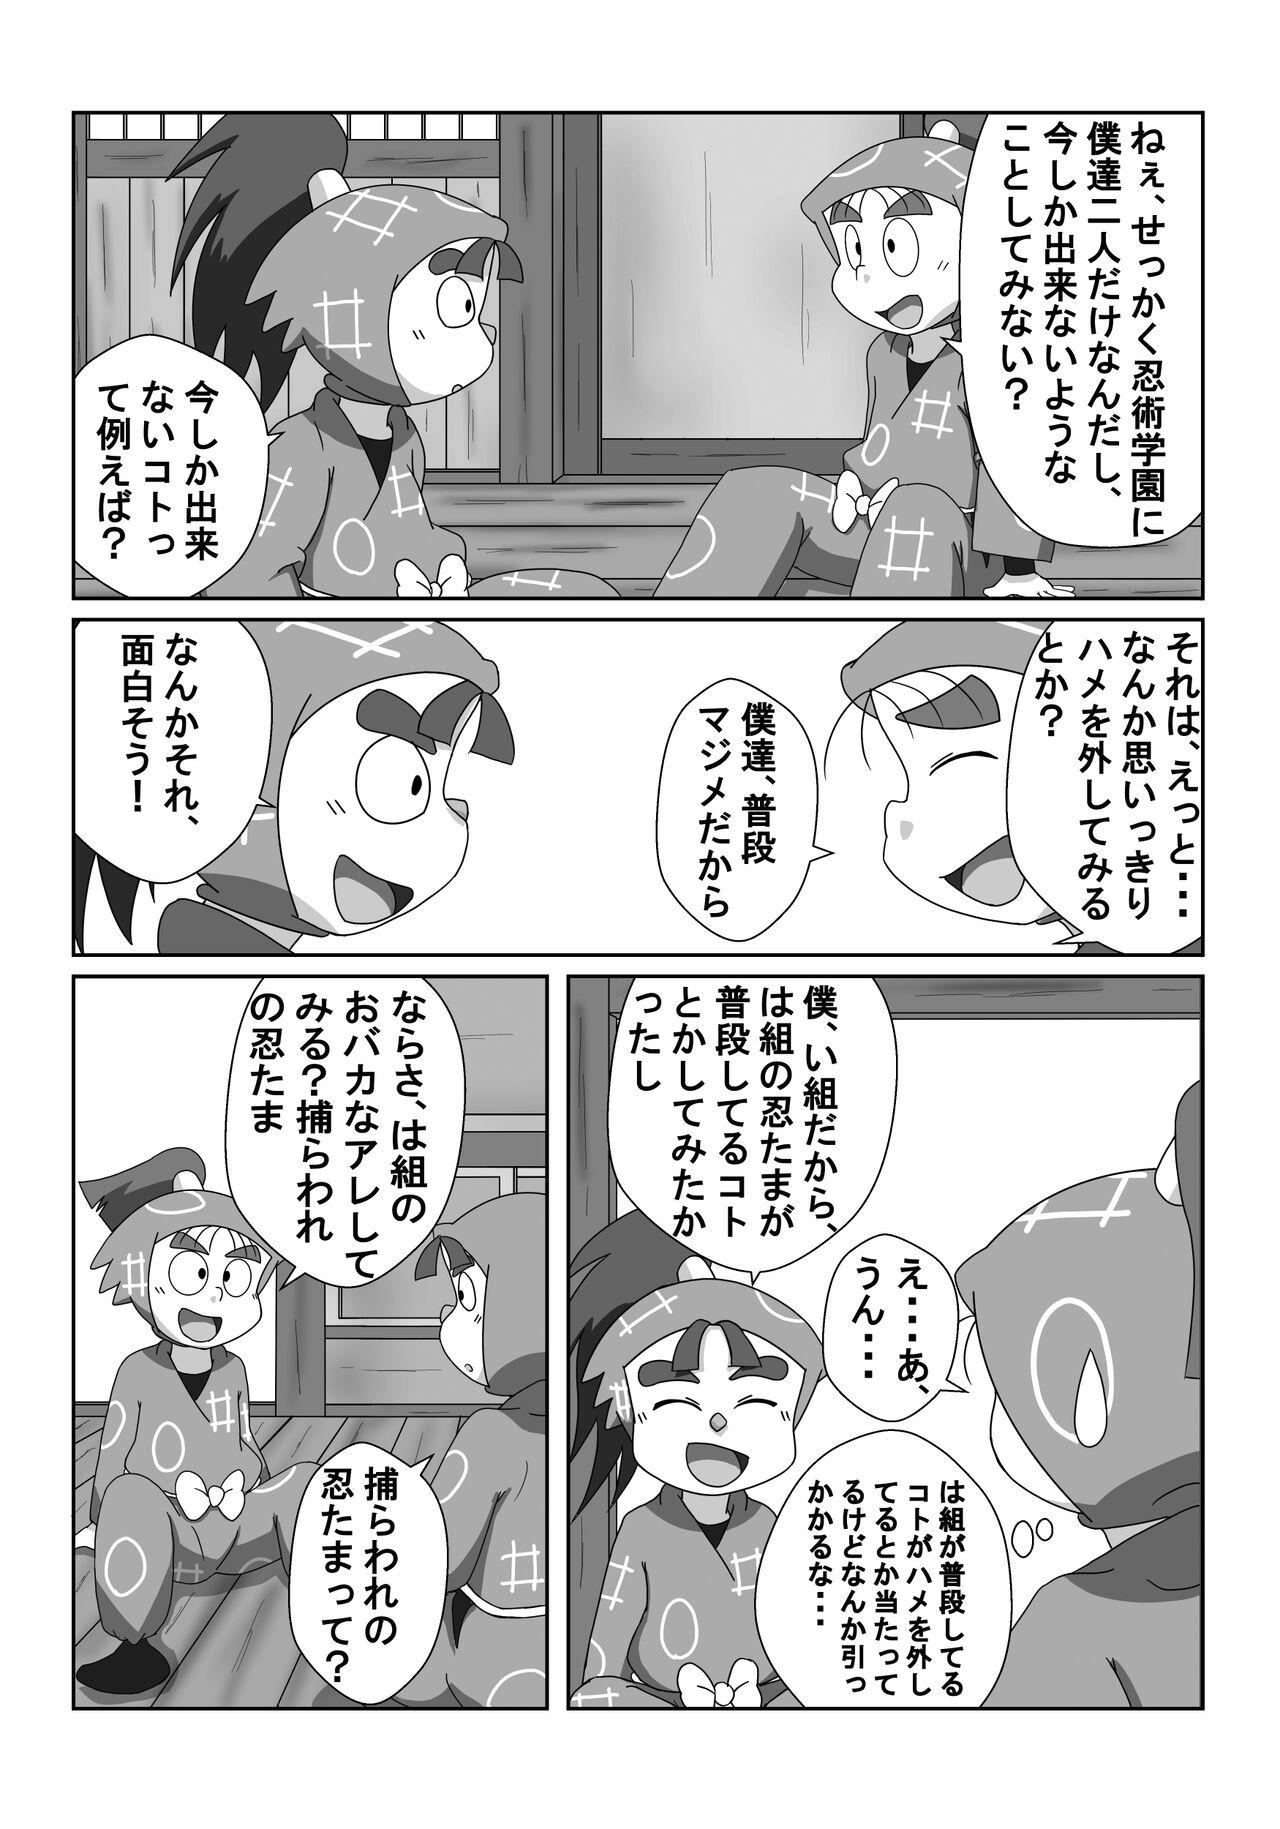 Coroa Ninjutsu Gakuen ni Bokutachi Futarikiri - Part 1 - Nintama rantarou Sentando - Page 4